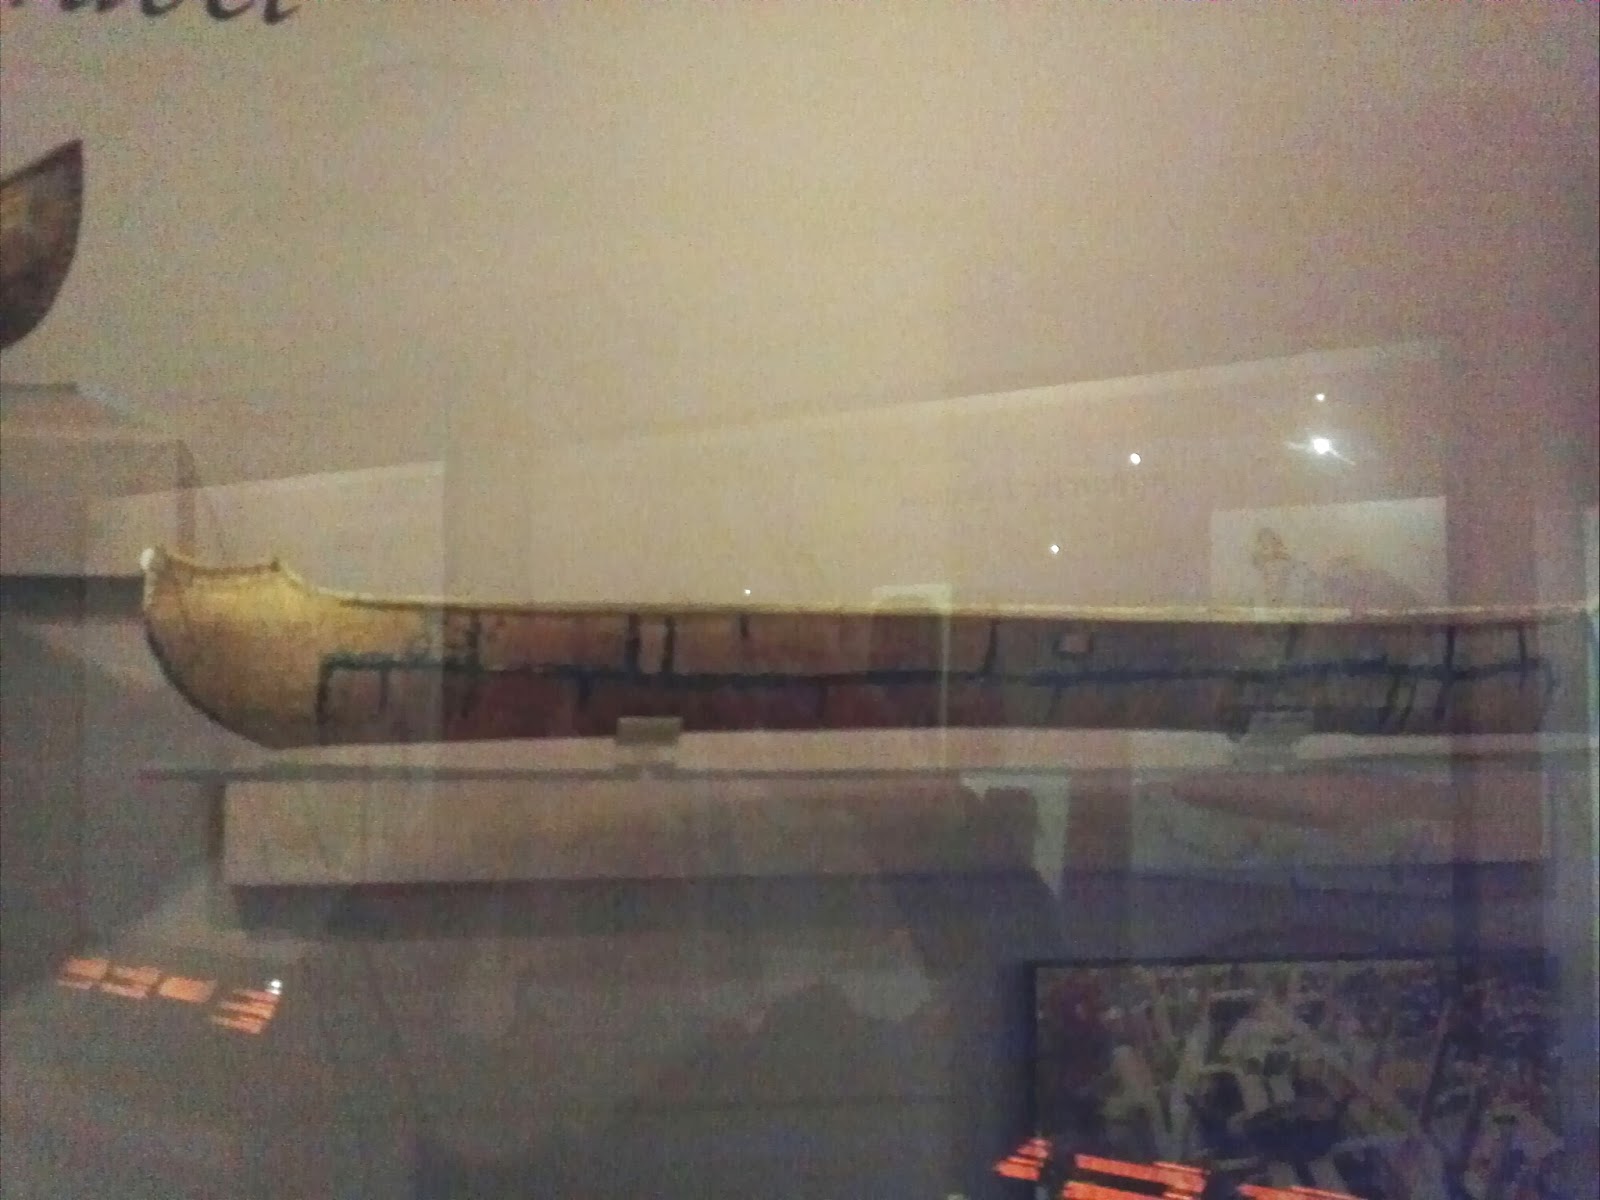 bark canoe model at Peabody Museum